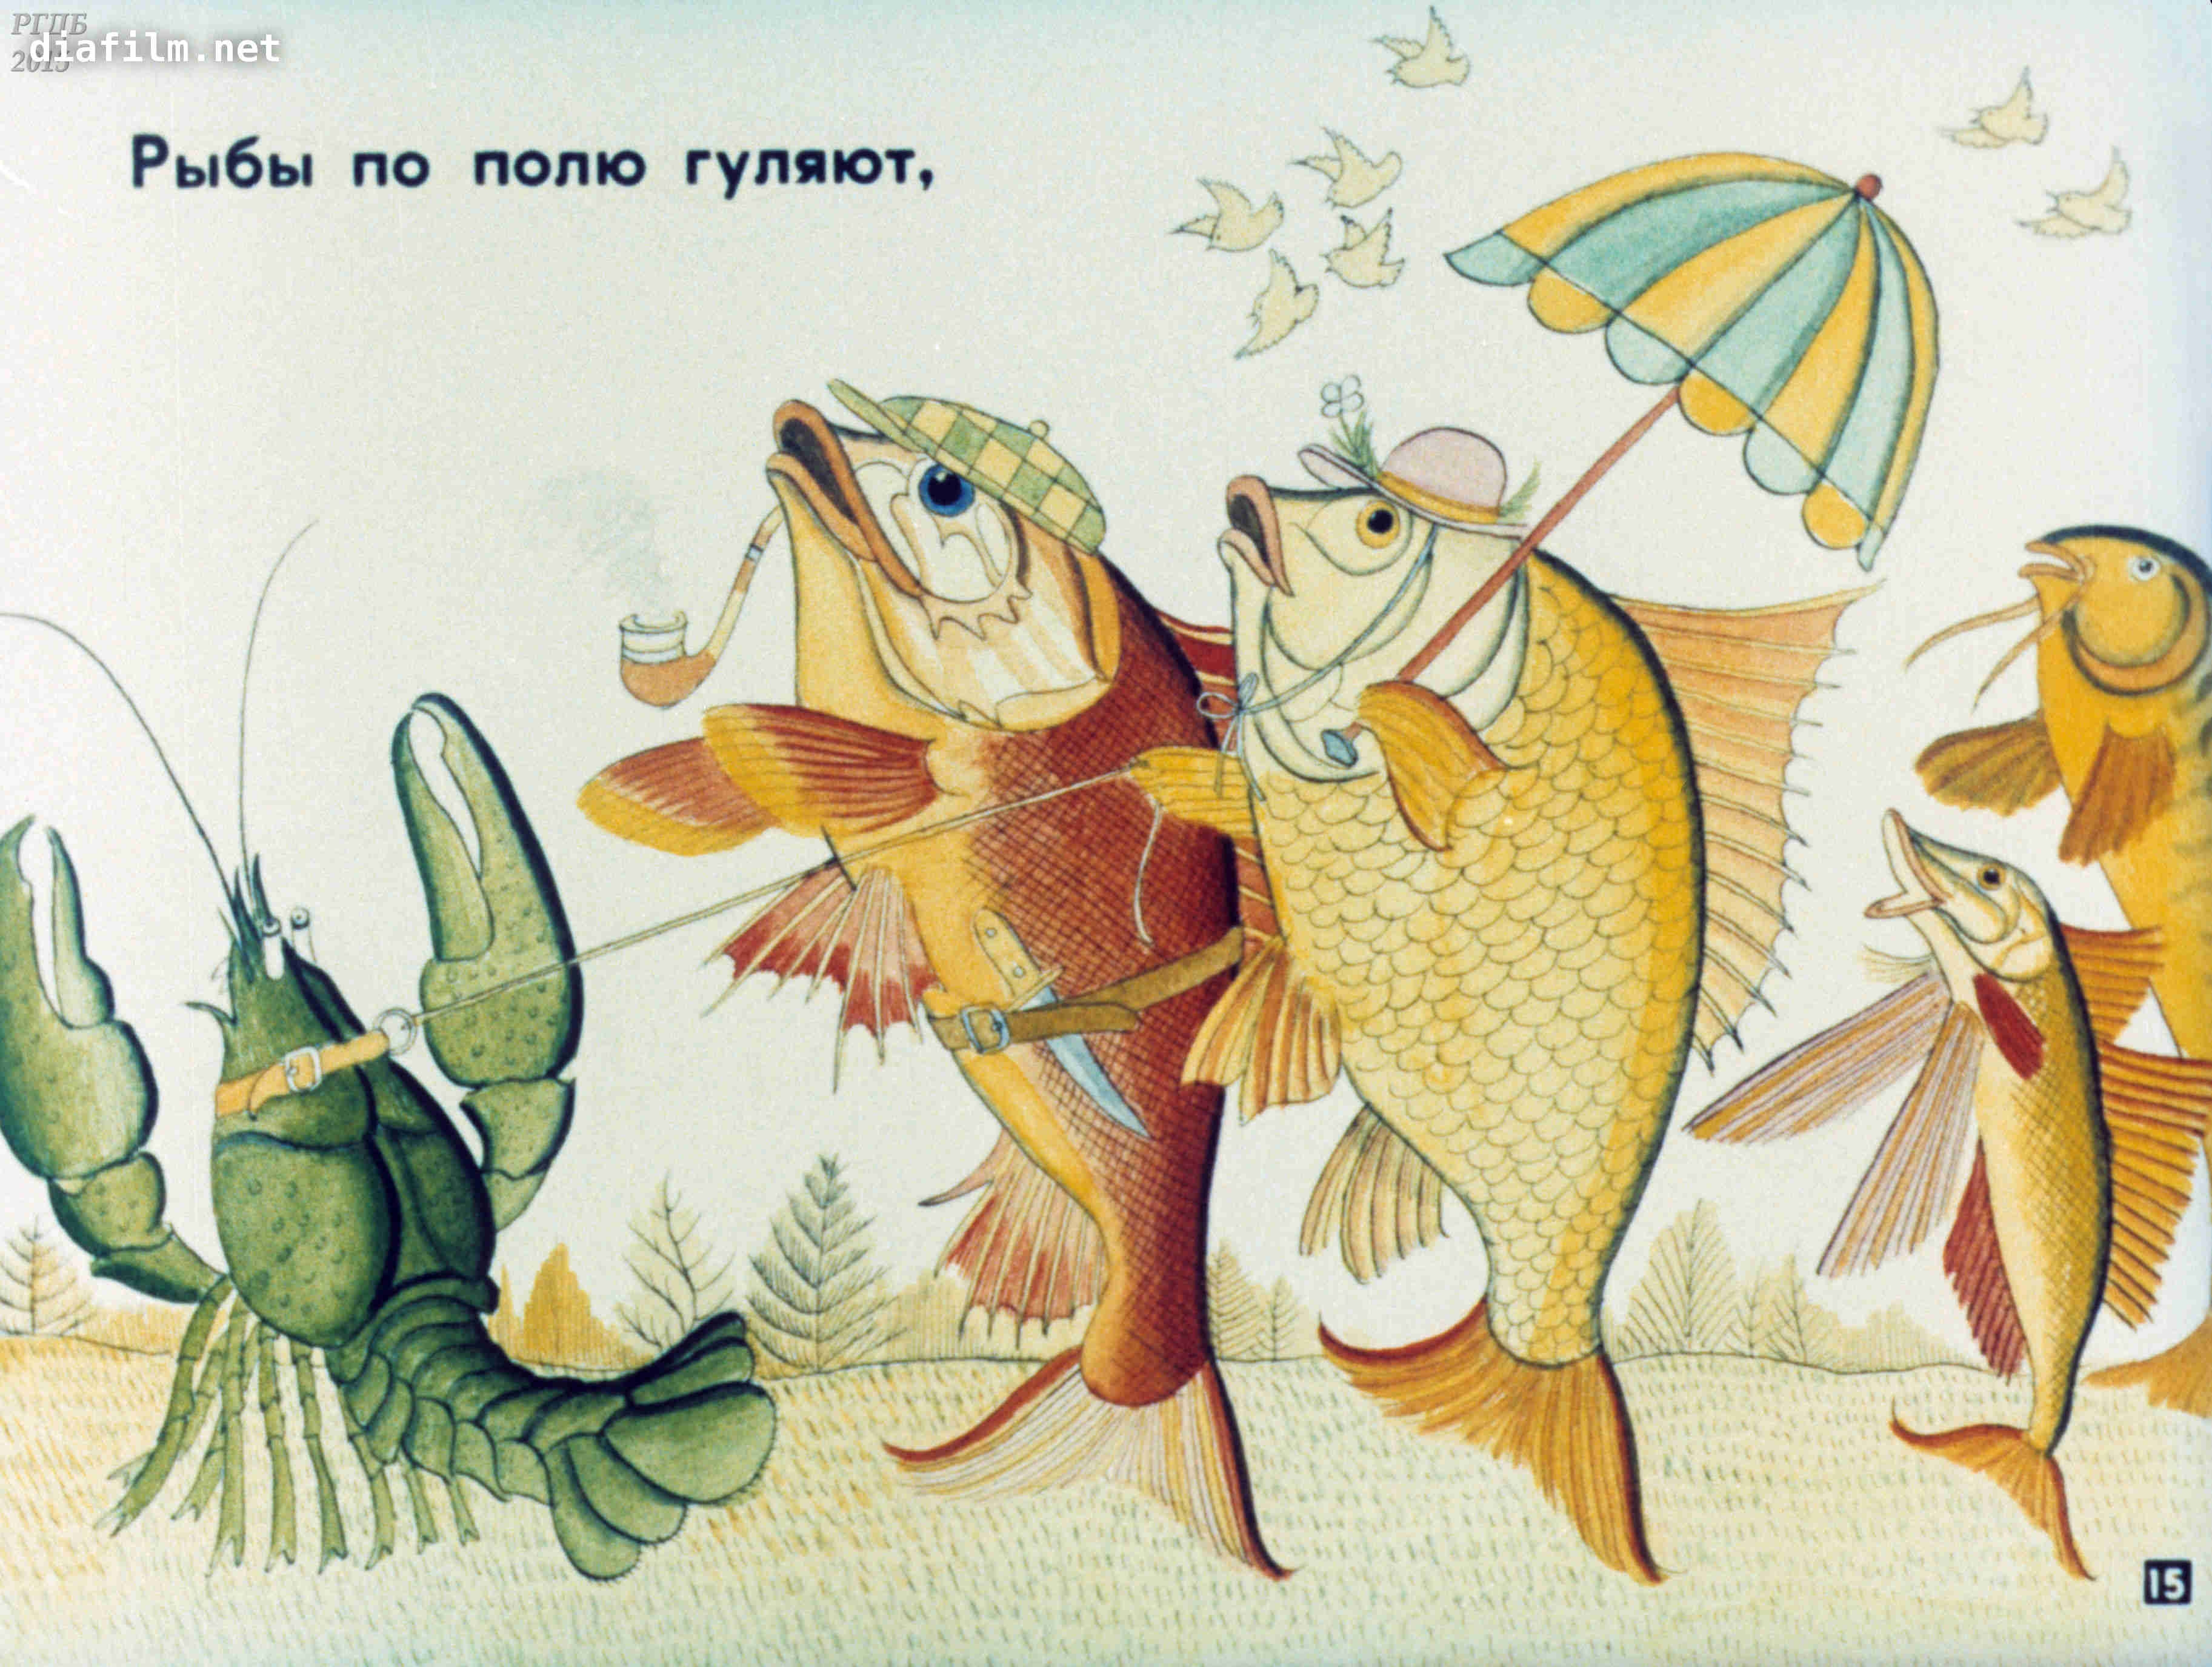 Иллюстрация к сказке путаница Корнея Чуковского